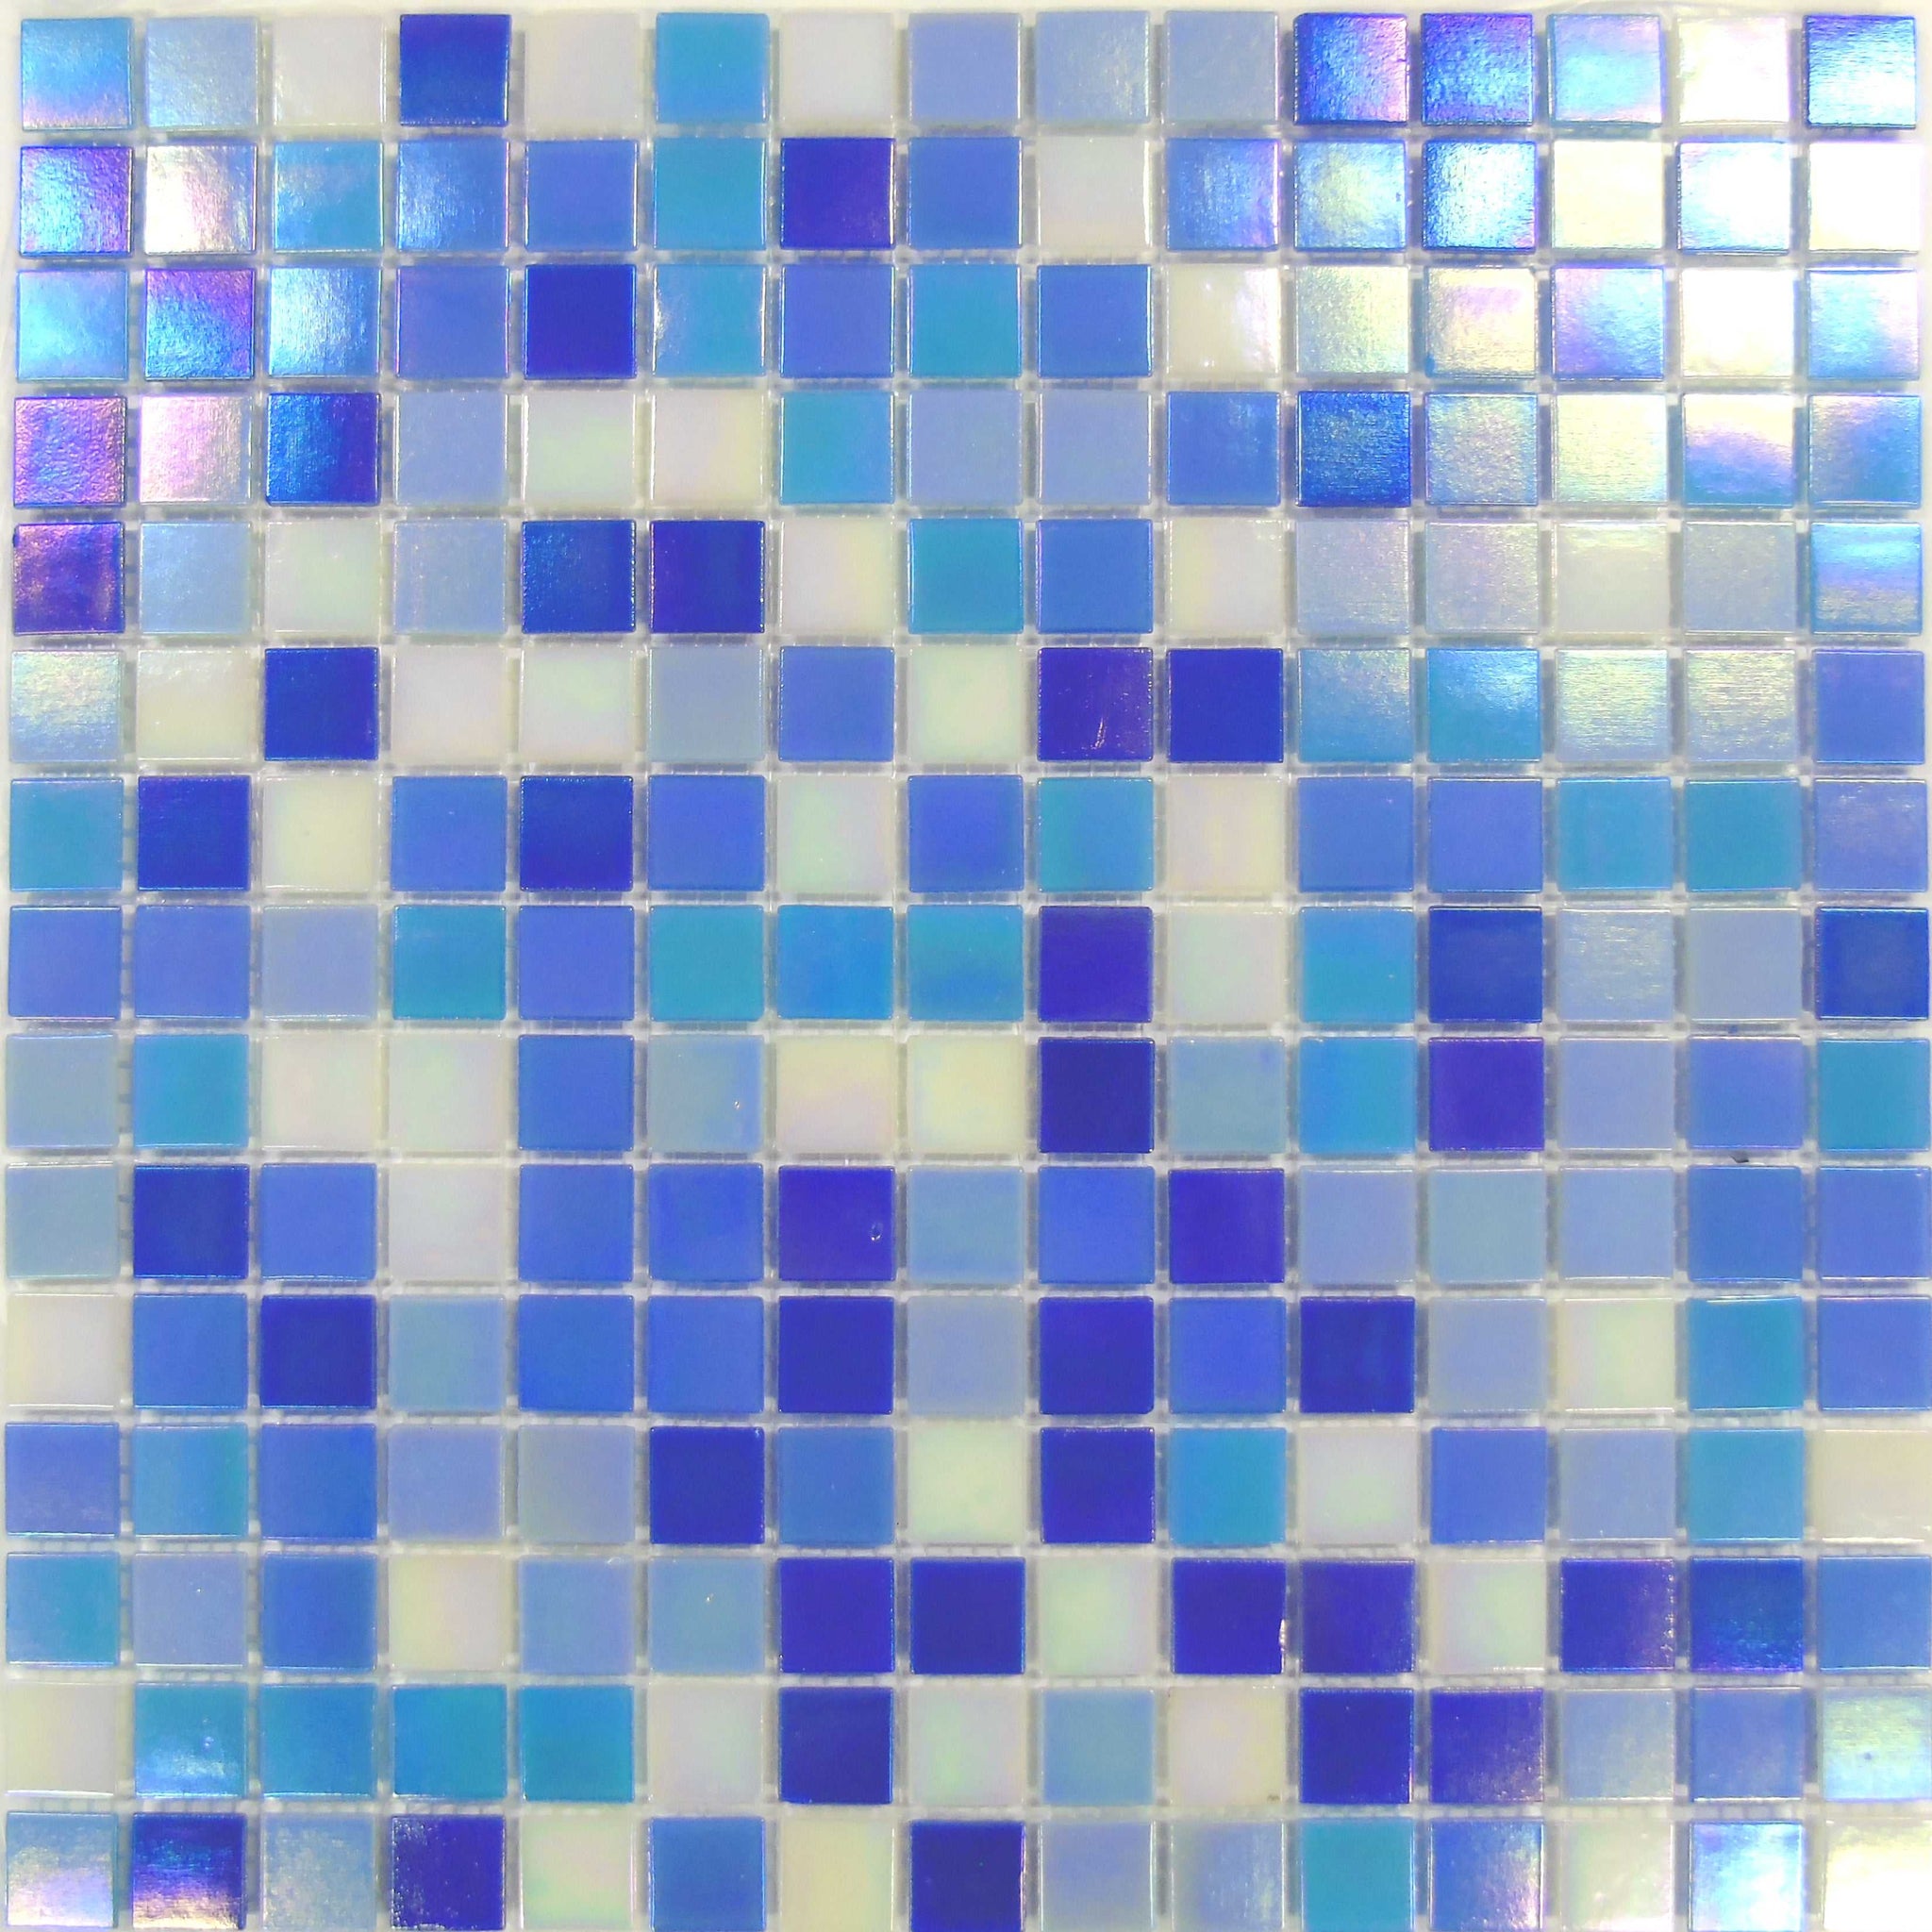 blue mosaic tile